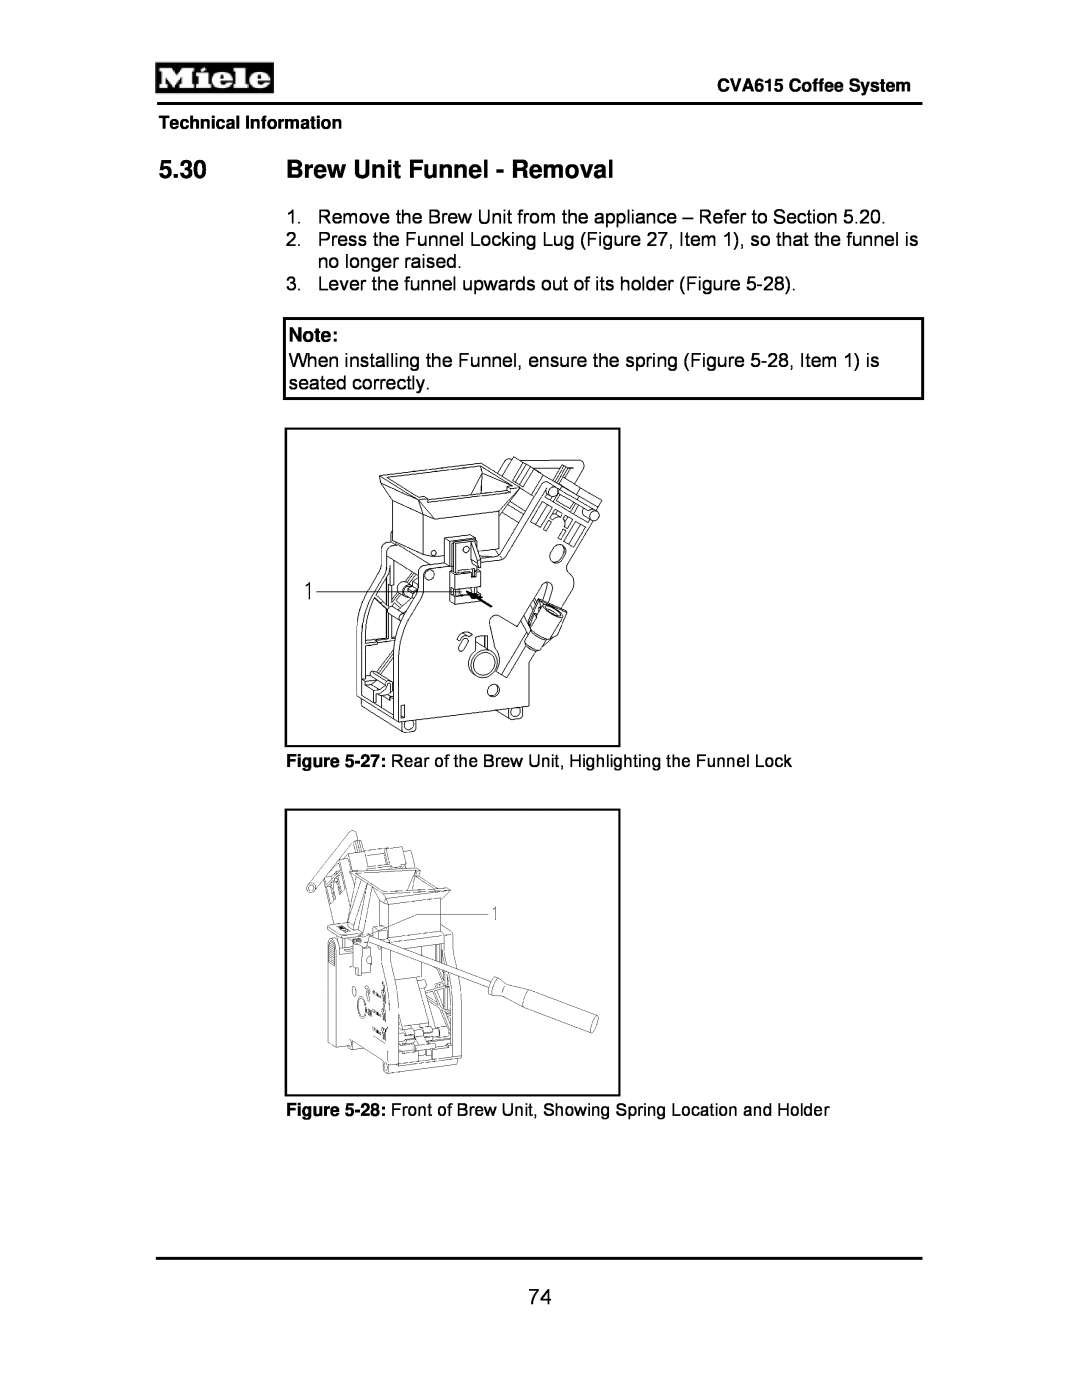 Miele CVA615 manual 5.30Brew Unit Funnel - Removal 